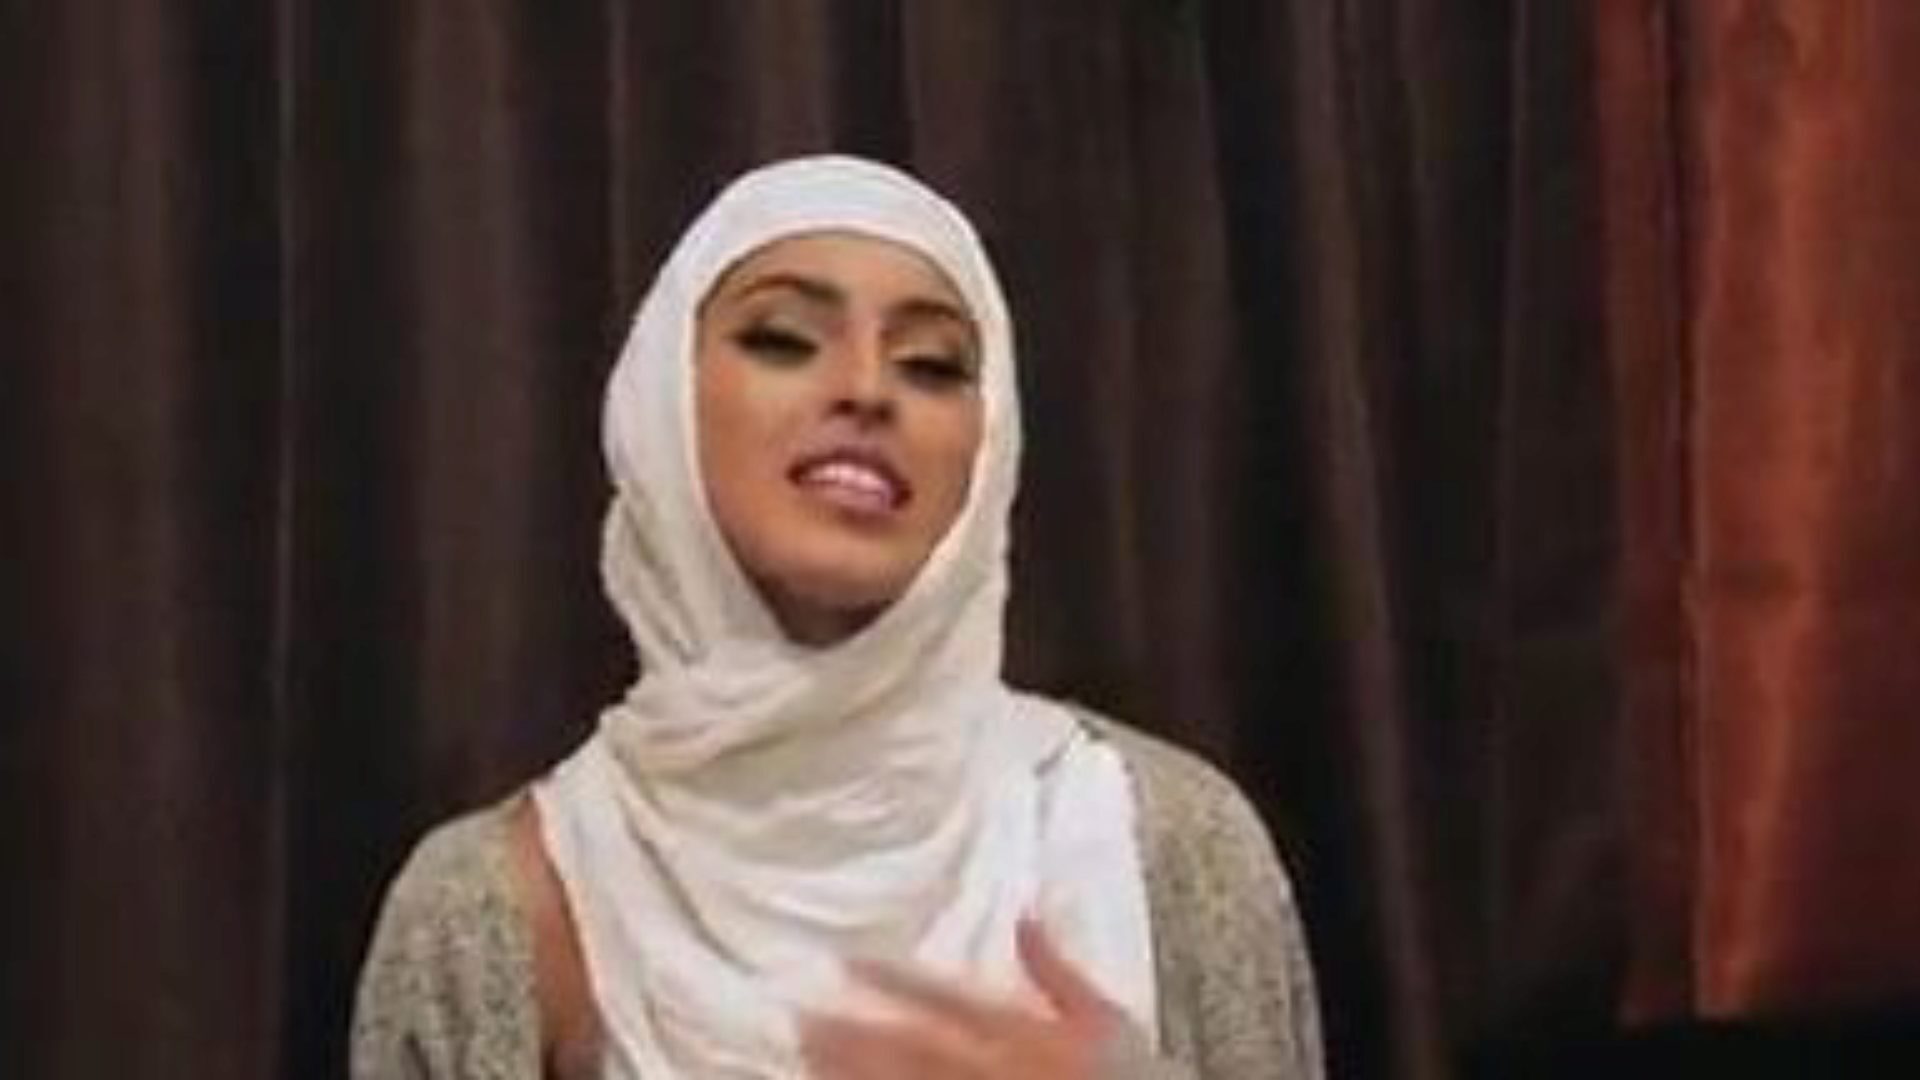 félénk, tapasztalatlan lányok fasz a hidzsábjaikban: ingyenes pornó 5e nézni a félénk tapasztalatlan lányok baszik a hidzsábjaik epizódjában a xhamsteren